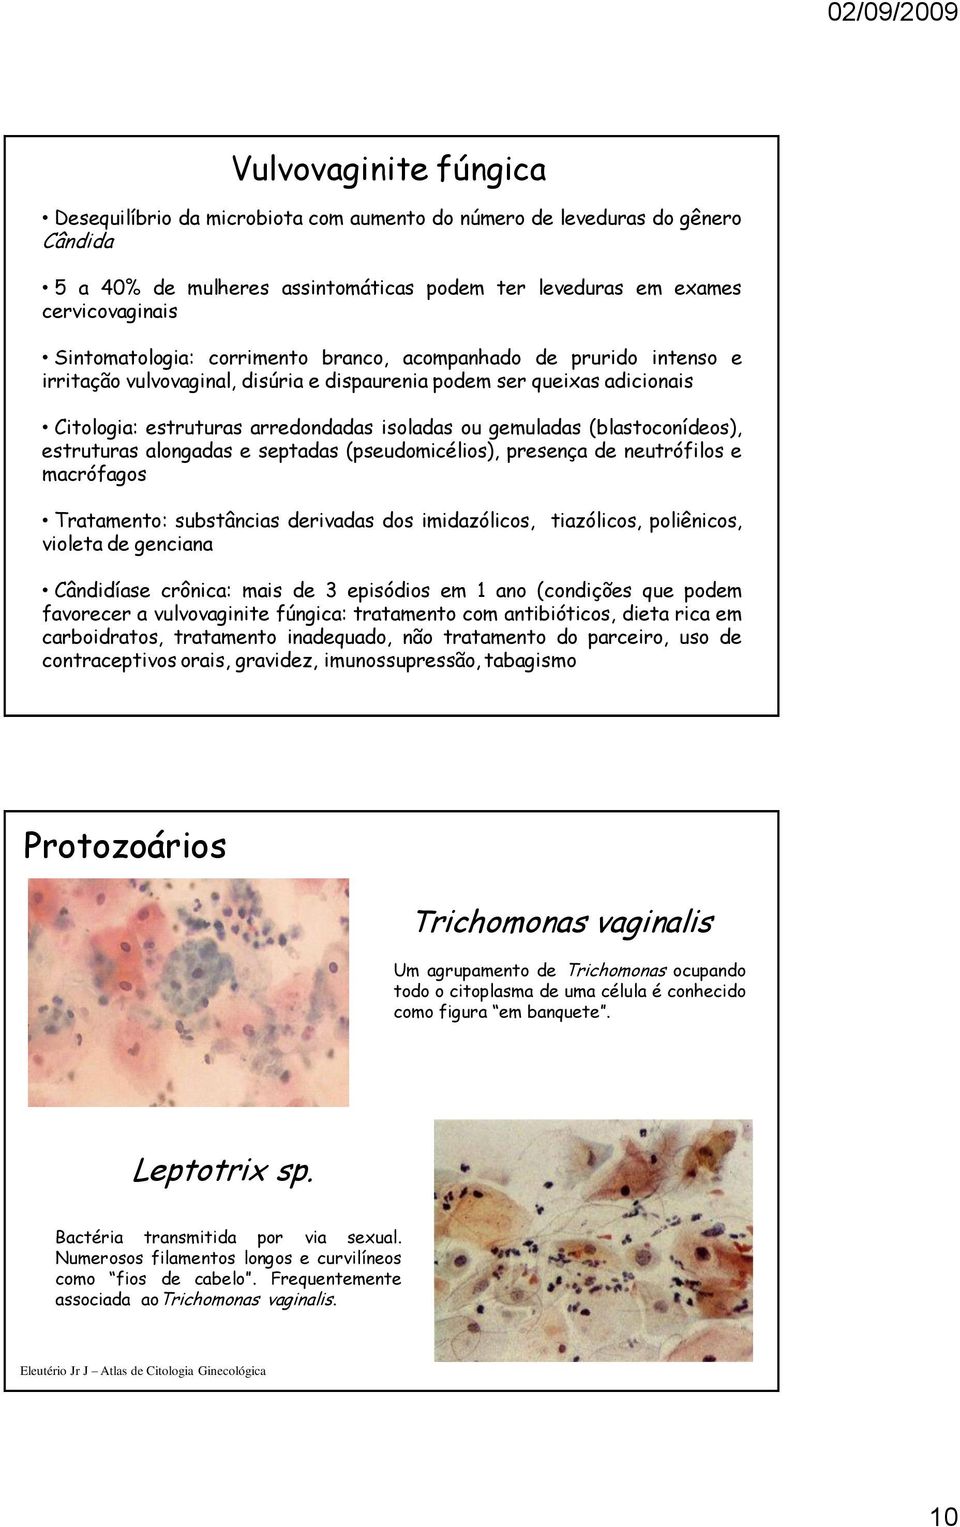 (blastoconídeos), estruturas alongadas e septadas (pseudomicélios), presença de neutrófilos e macrófagos Tratamento: substâncias derivadas dos imidazólicos, violeta de genciana tiazólicos,